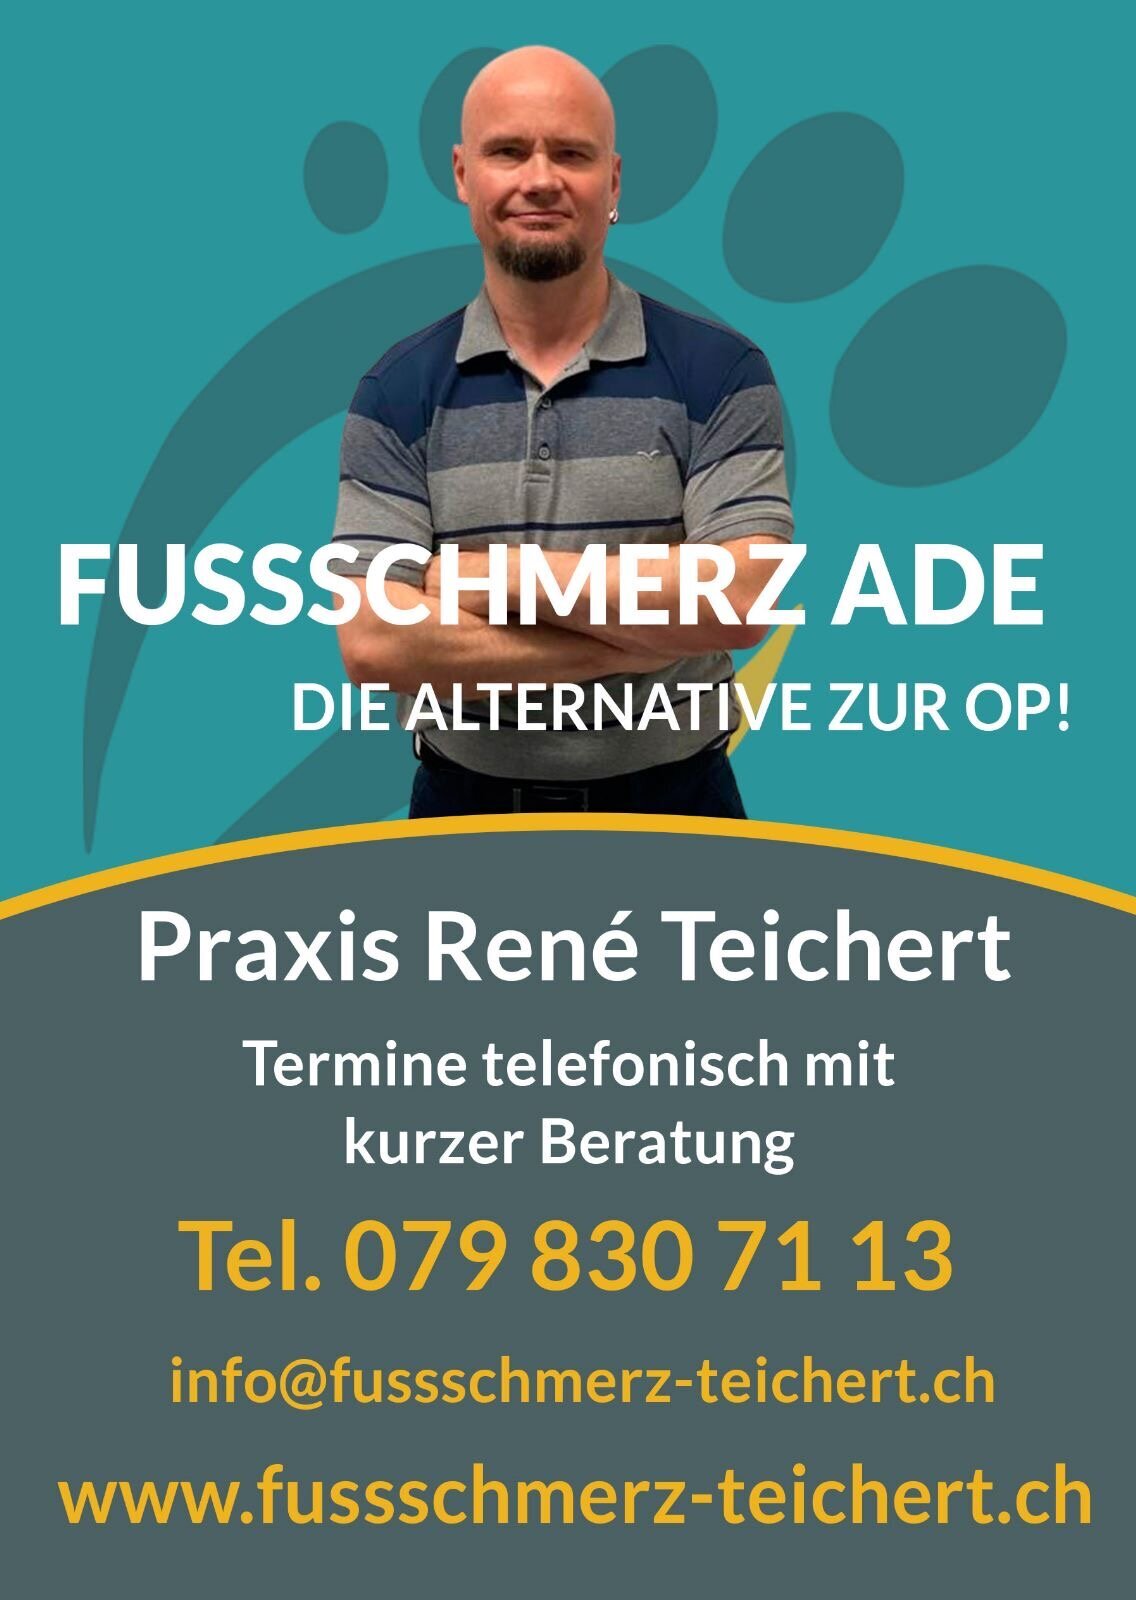 Fussschmerz-Teichert Bern 079 830 71 13